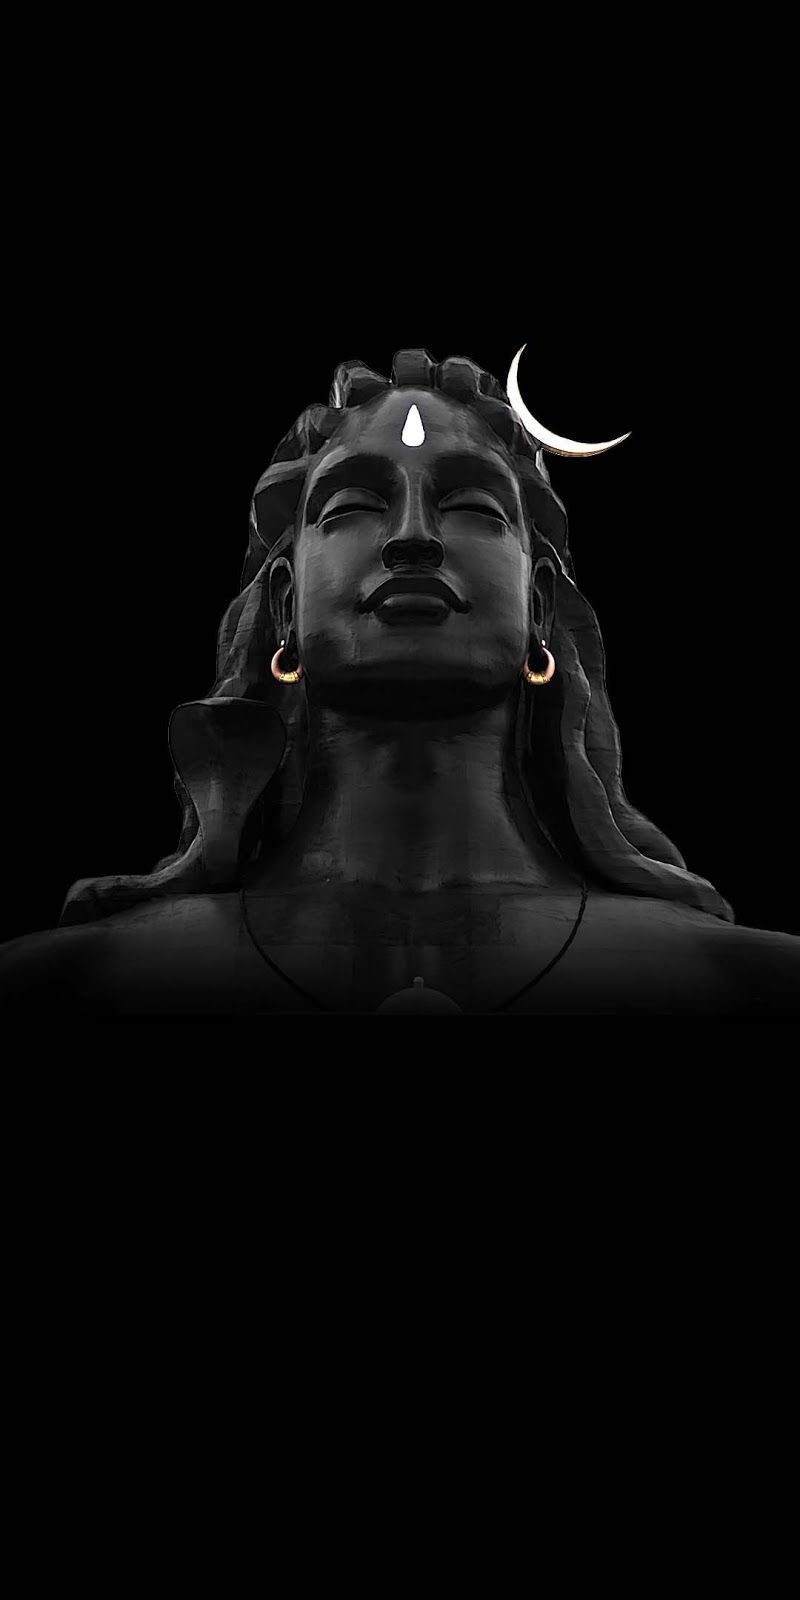 สิ่งที่ฉันบันทึก. Shiva wallpaper, Lord shiva, Shiva lord wallpaper